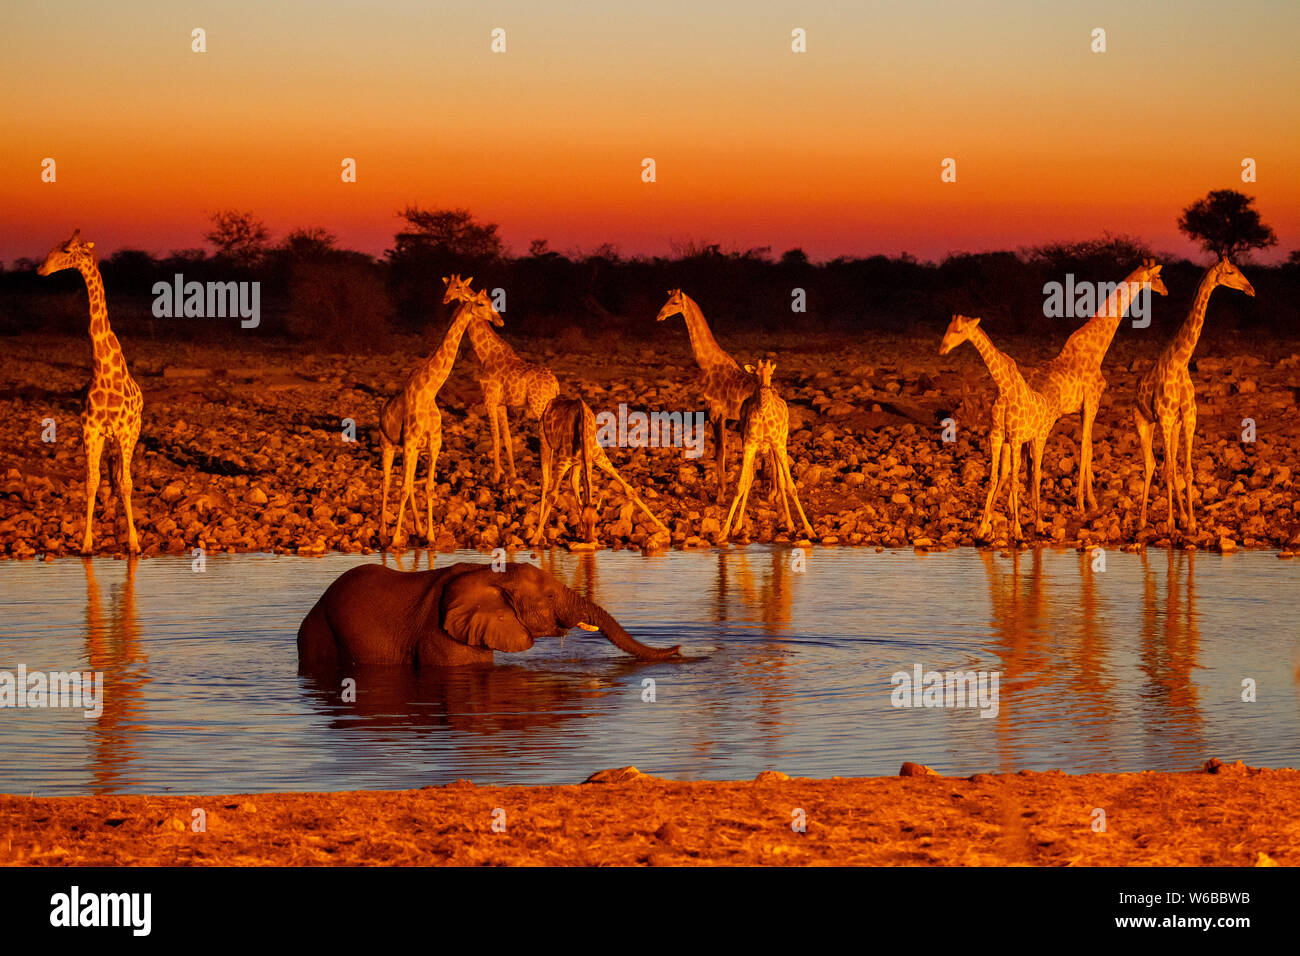 Elephant drinking with giraffes in the background at sunset, Okaukuejo waterhole, Etosha National Park, Namibia Stock Photo